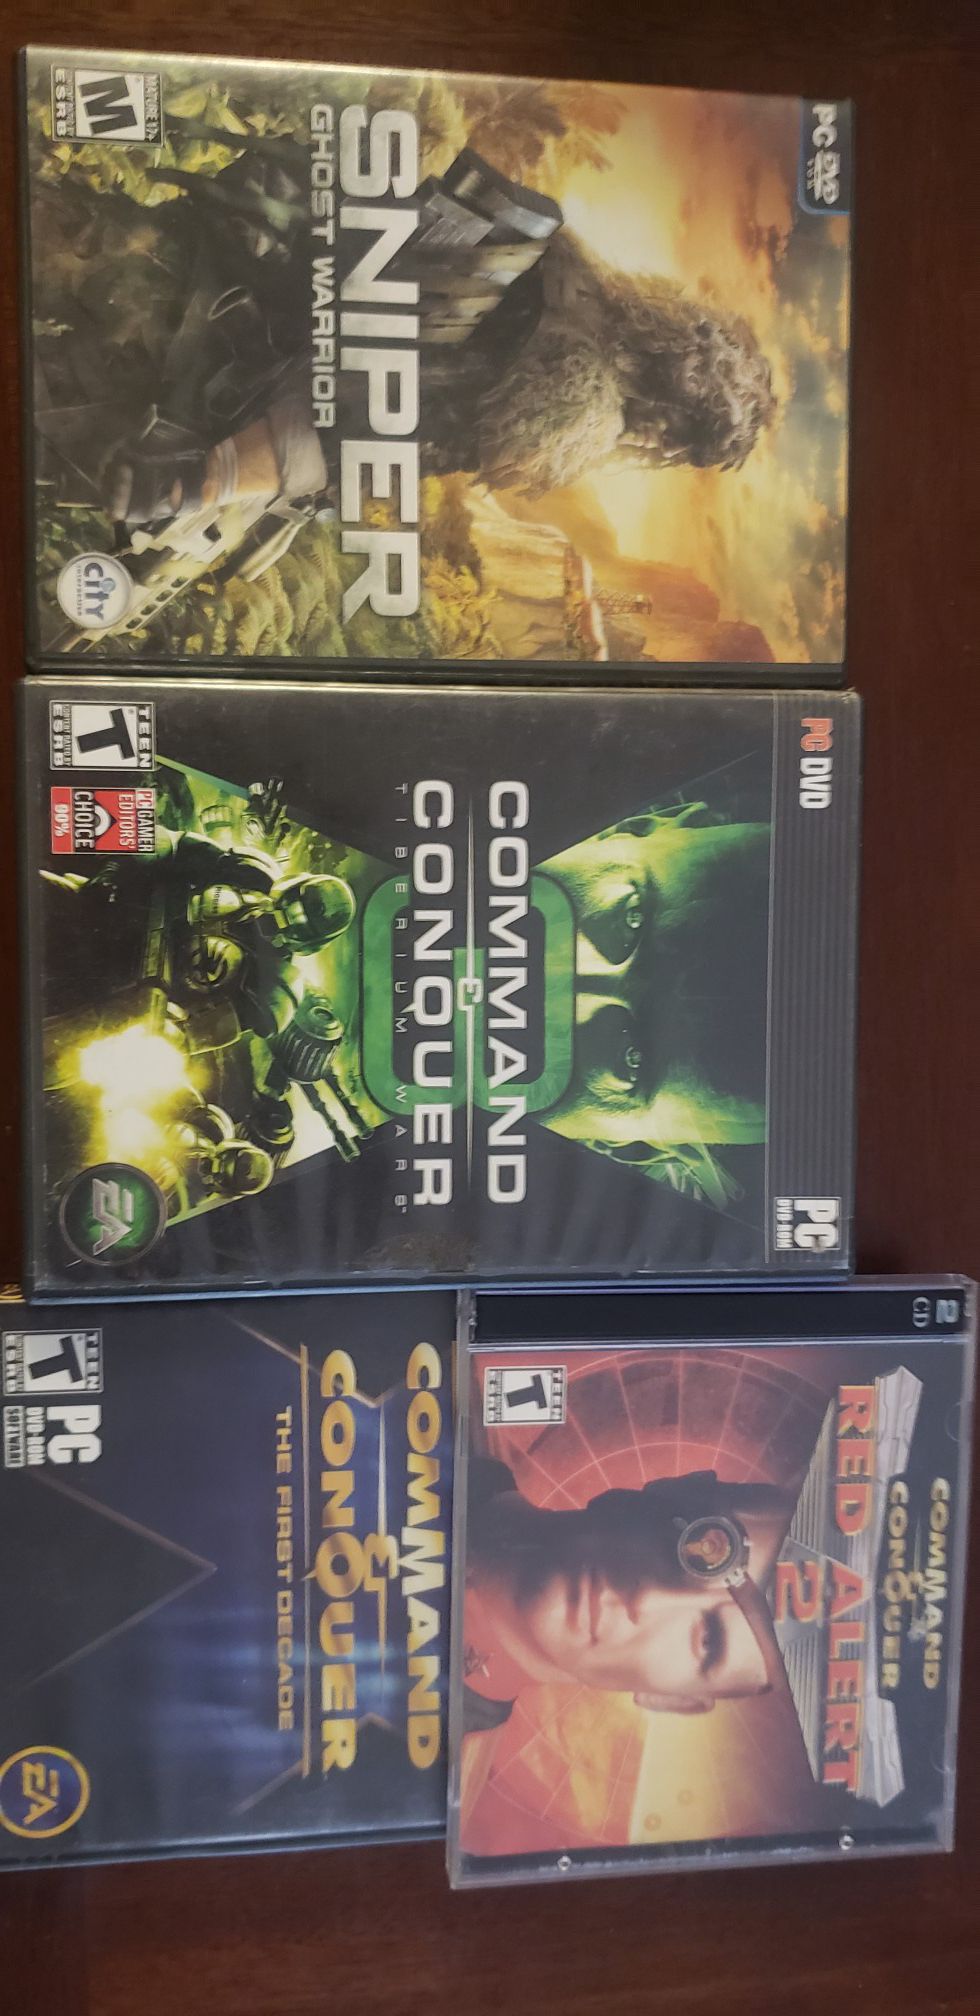 PC Games ($10 each)